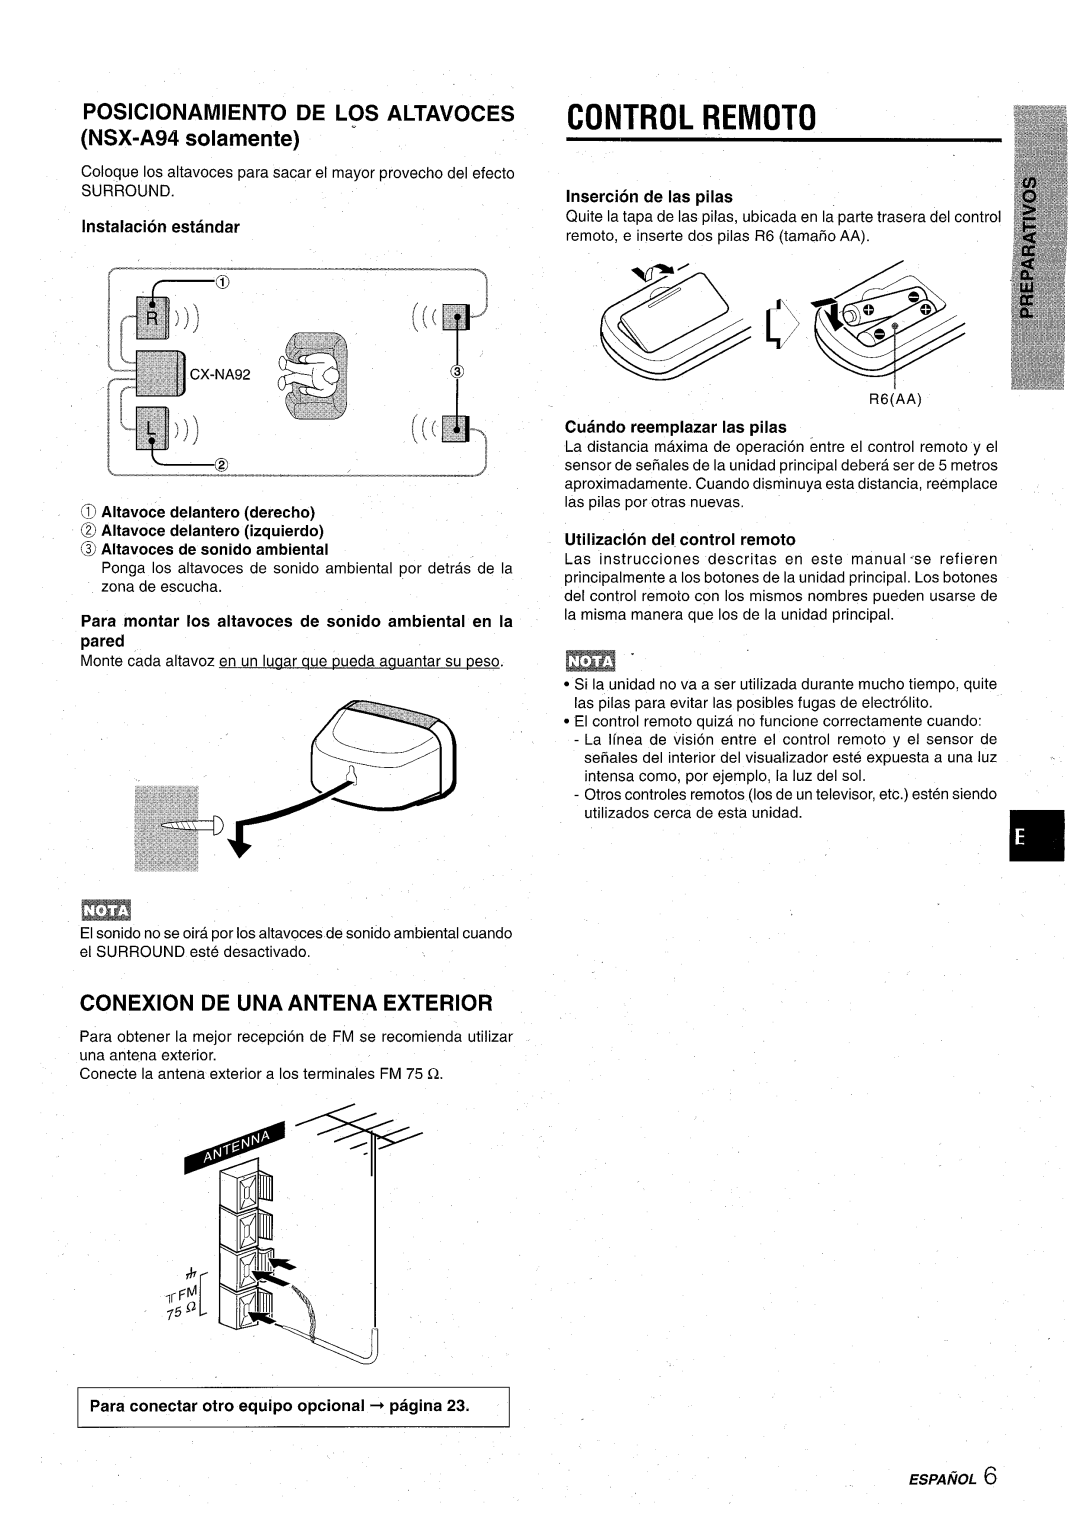 Aiwa CX-NA92 Control Remoto, POSICIONAMIENTO DE LOS ALTAVOCES NSX-A94 solamente, Conexion De Una Antena Exterior, + pagina 